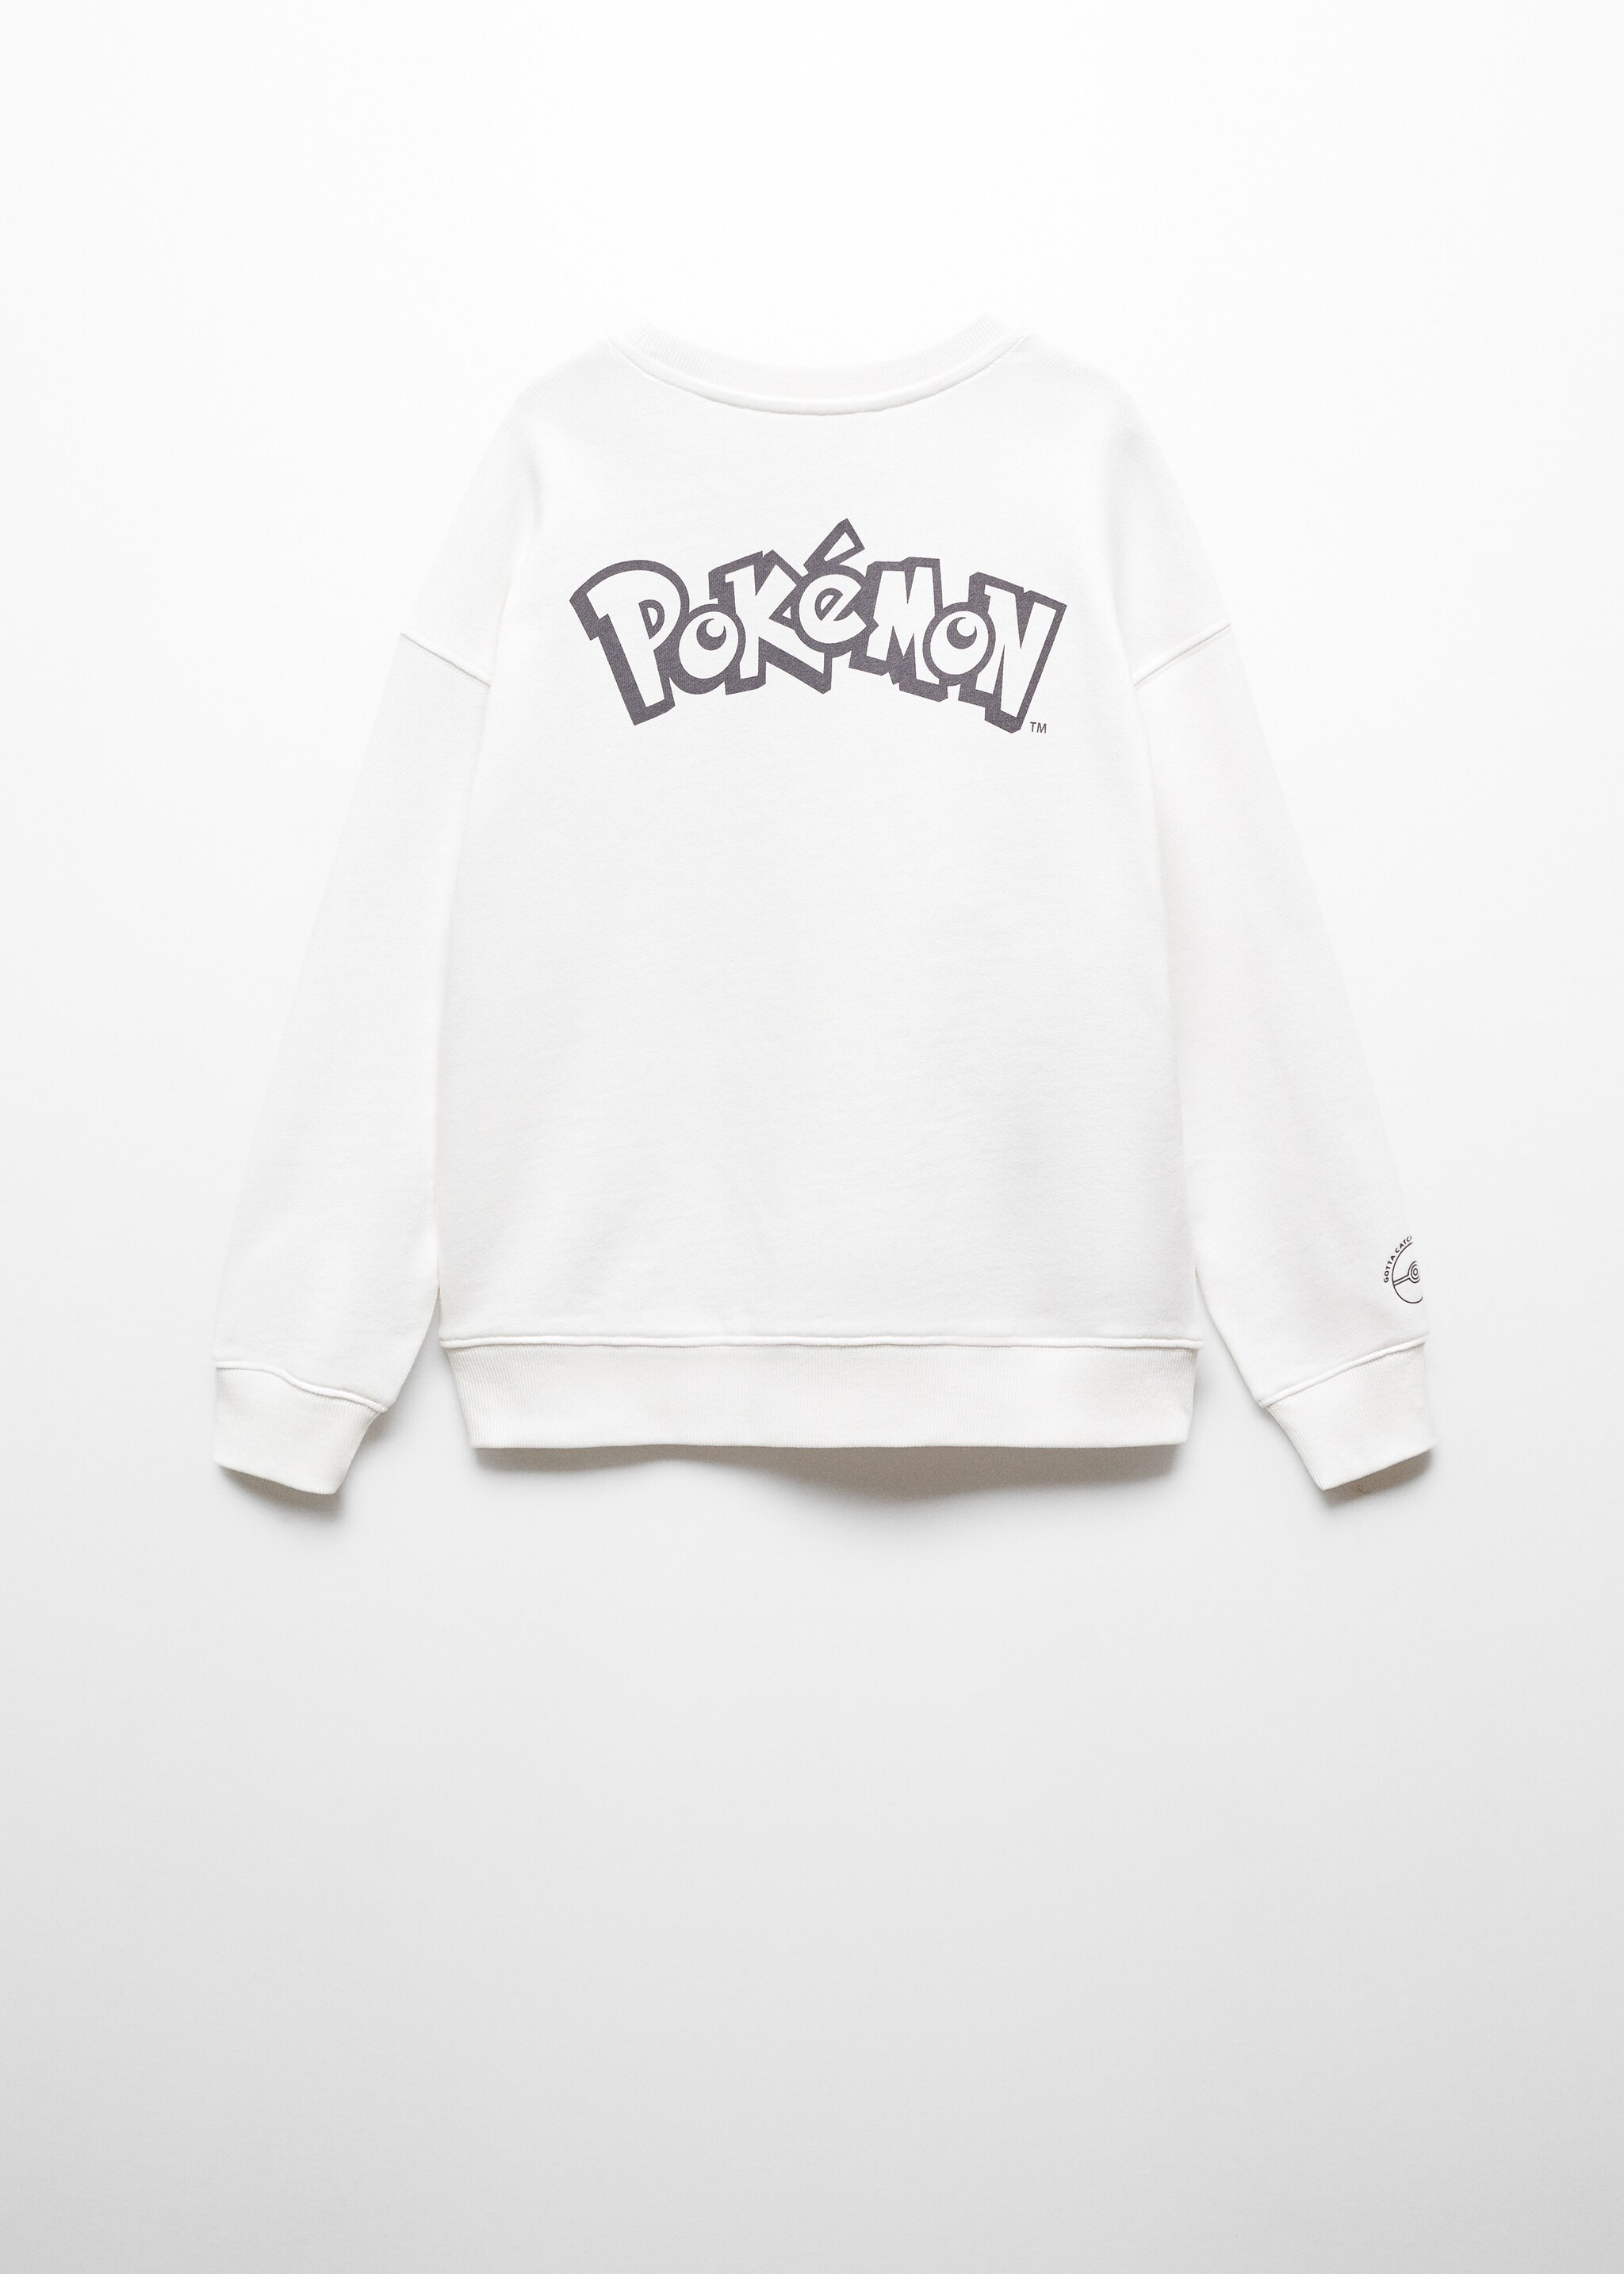 Sweatshirt do Pokémon - Verso do artigo